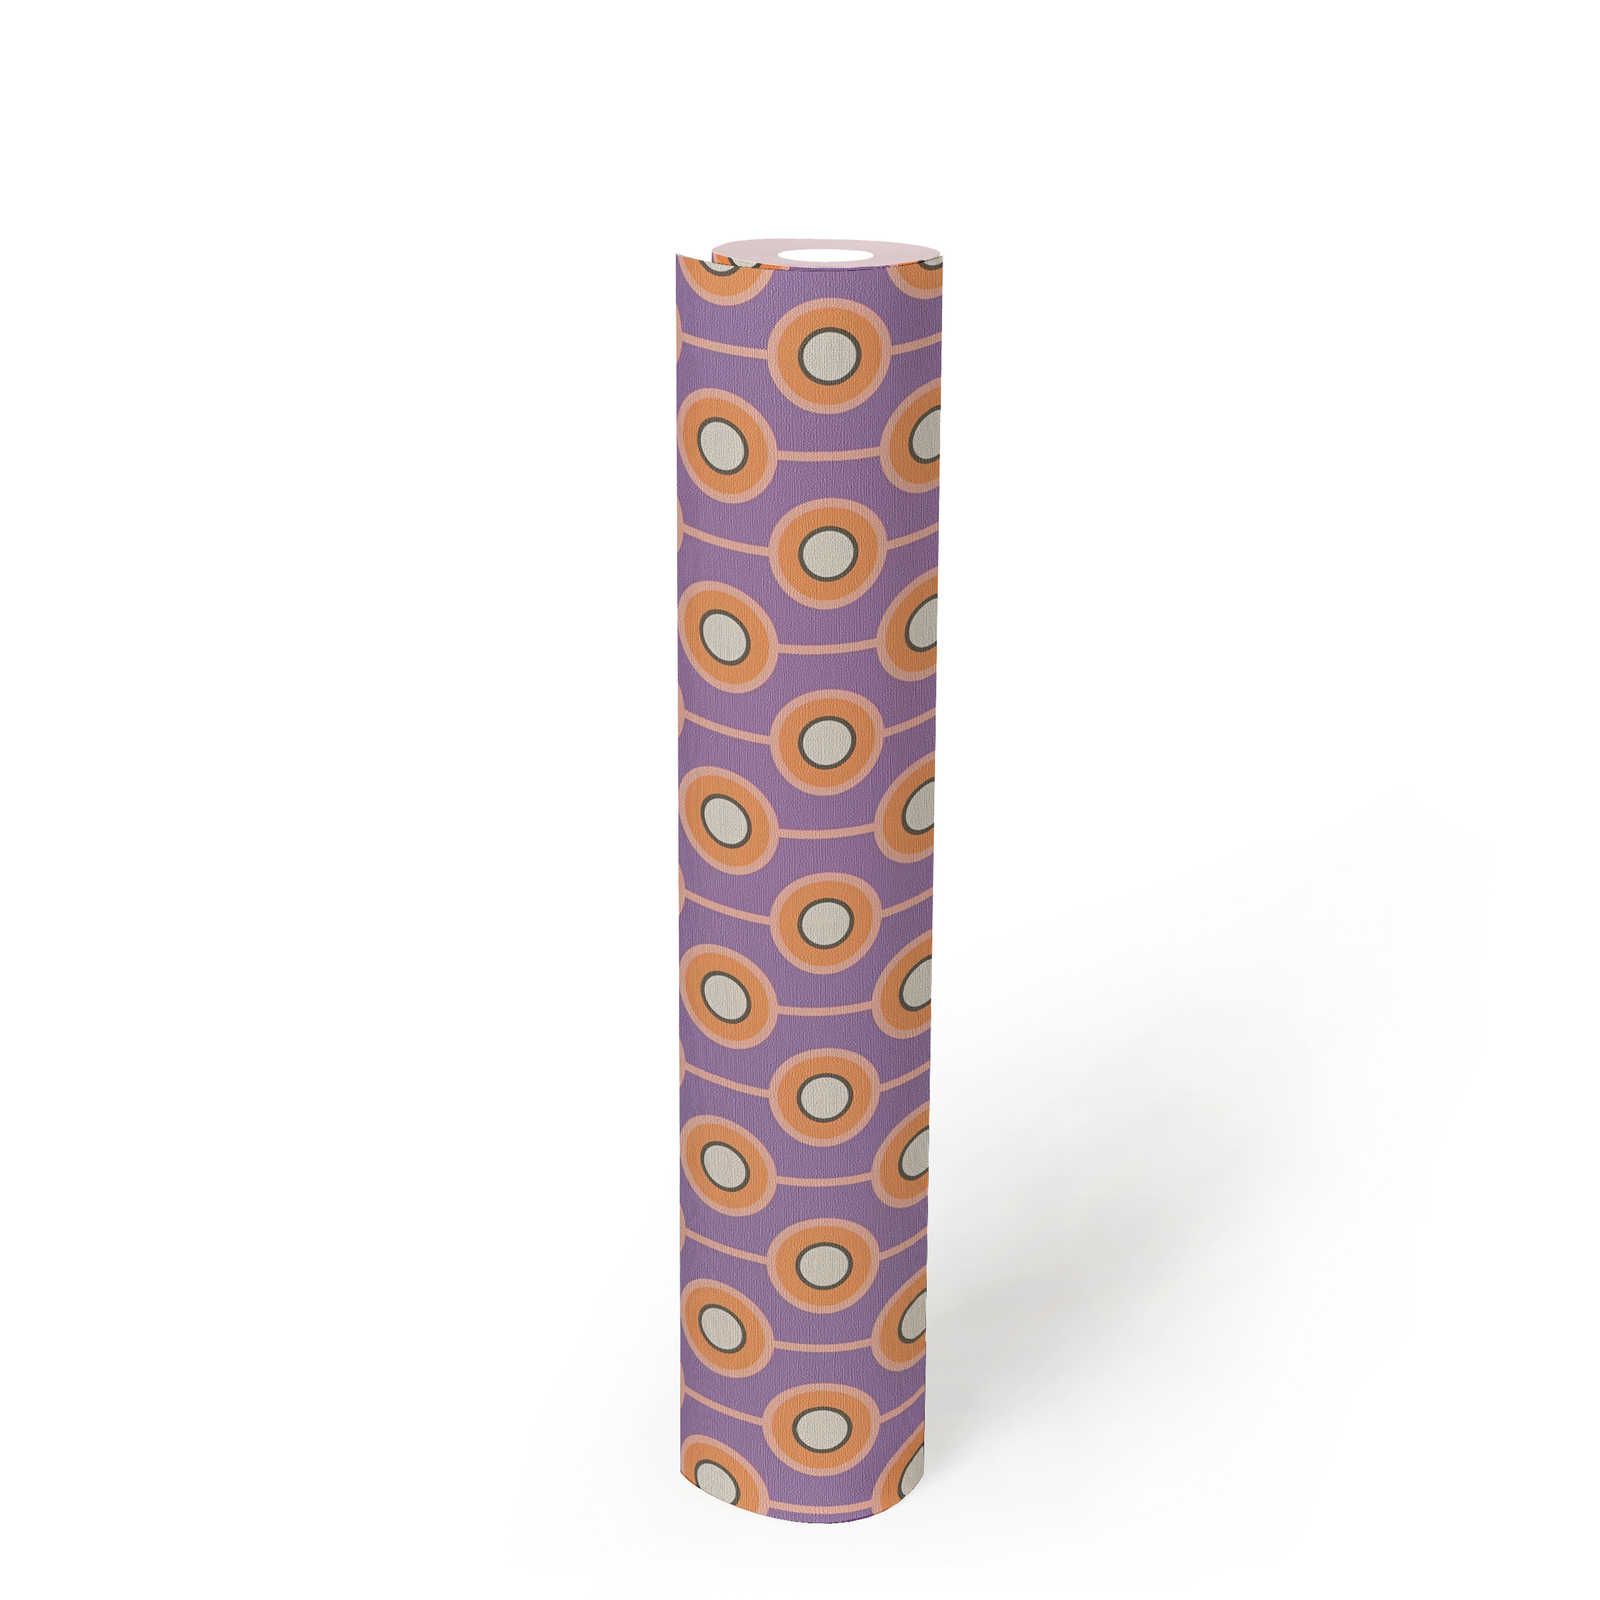             Motif abstrait de cercle sur papier peint intissé de style rétro - violet, orange, beige
        